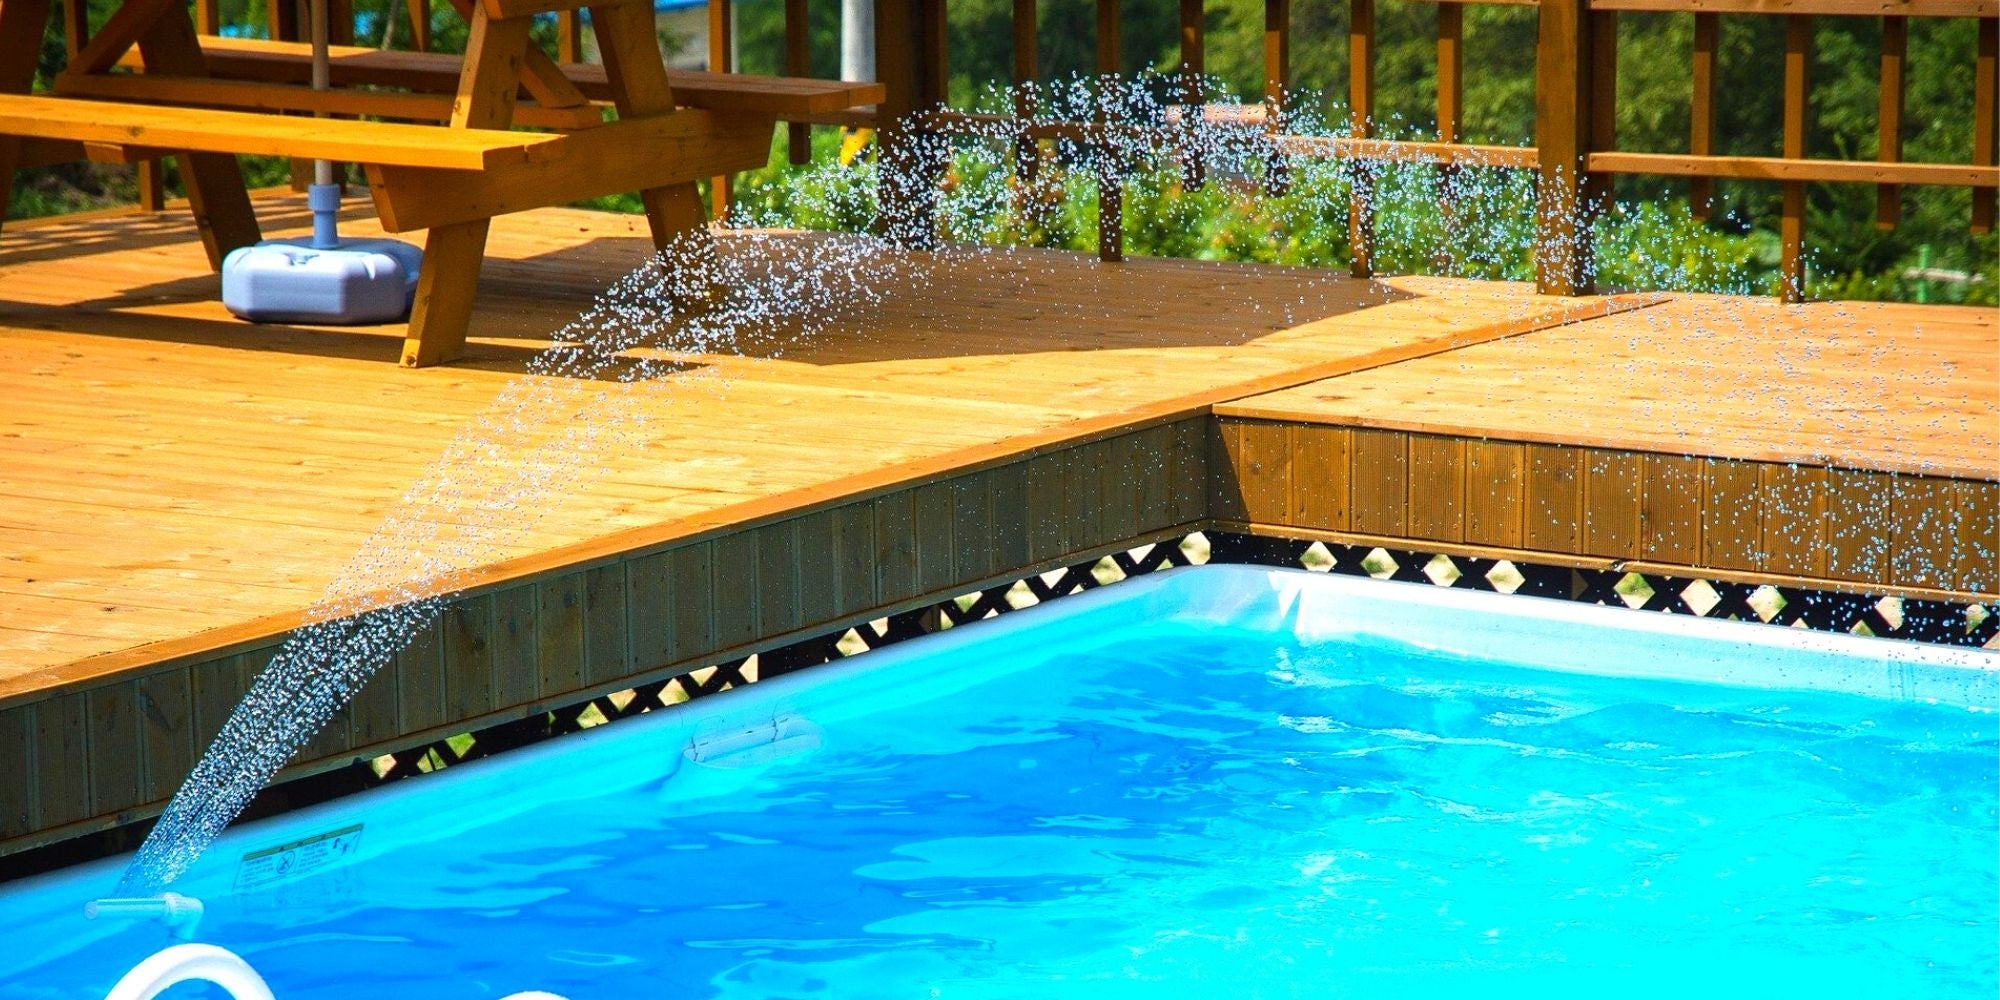 Le deck de piscine : une plage pour les piscines hors-sol